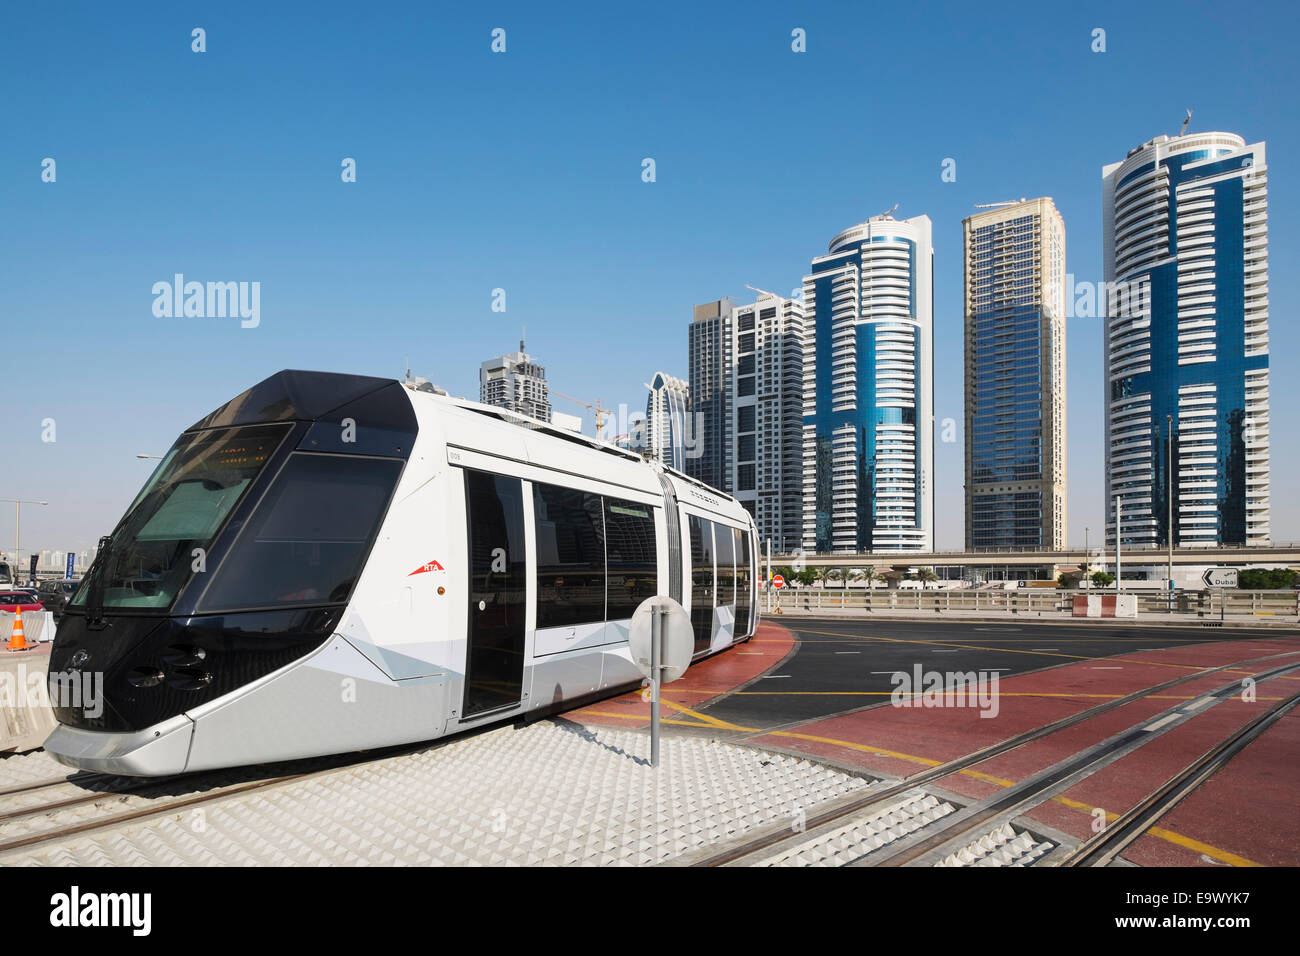 New public Tram in Dubai United Arab Emirates Stock Photo